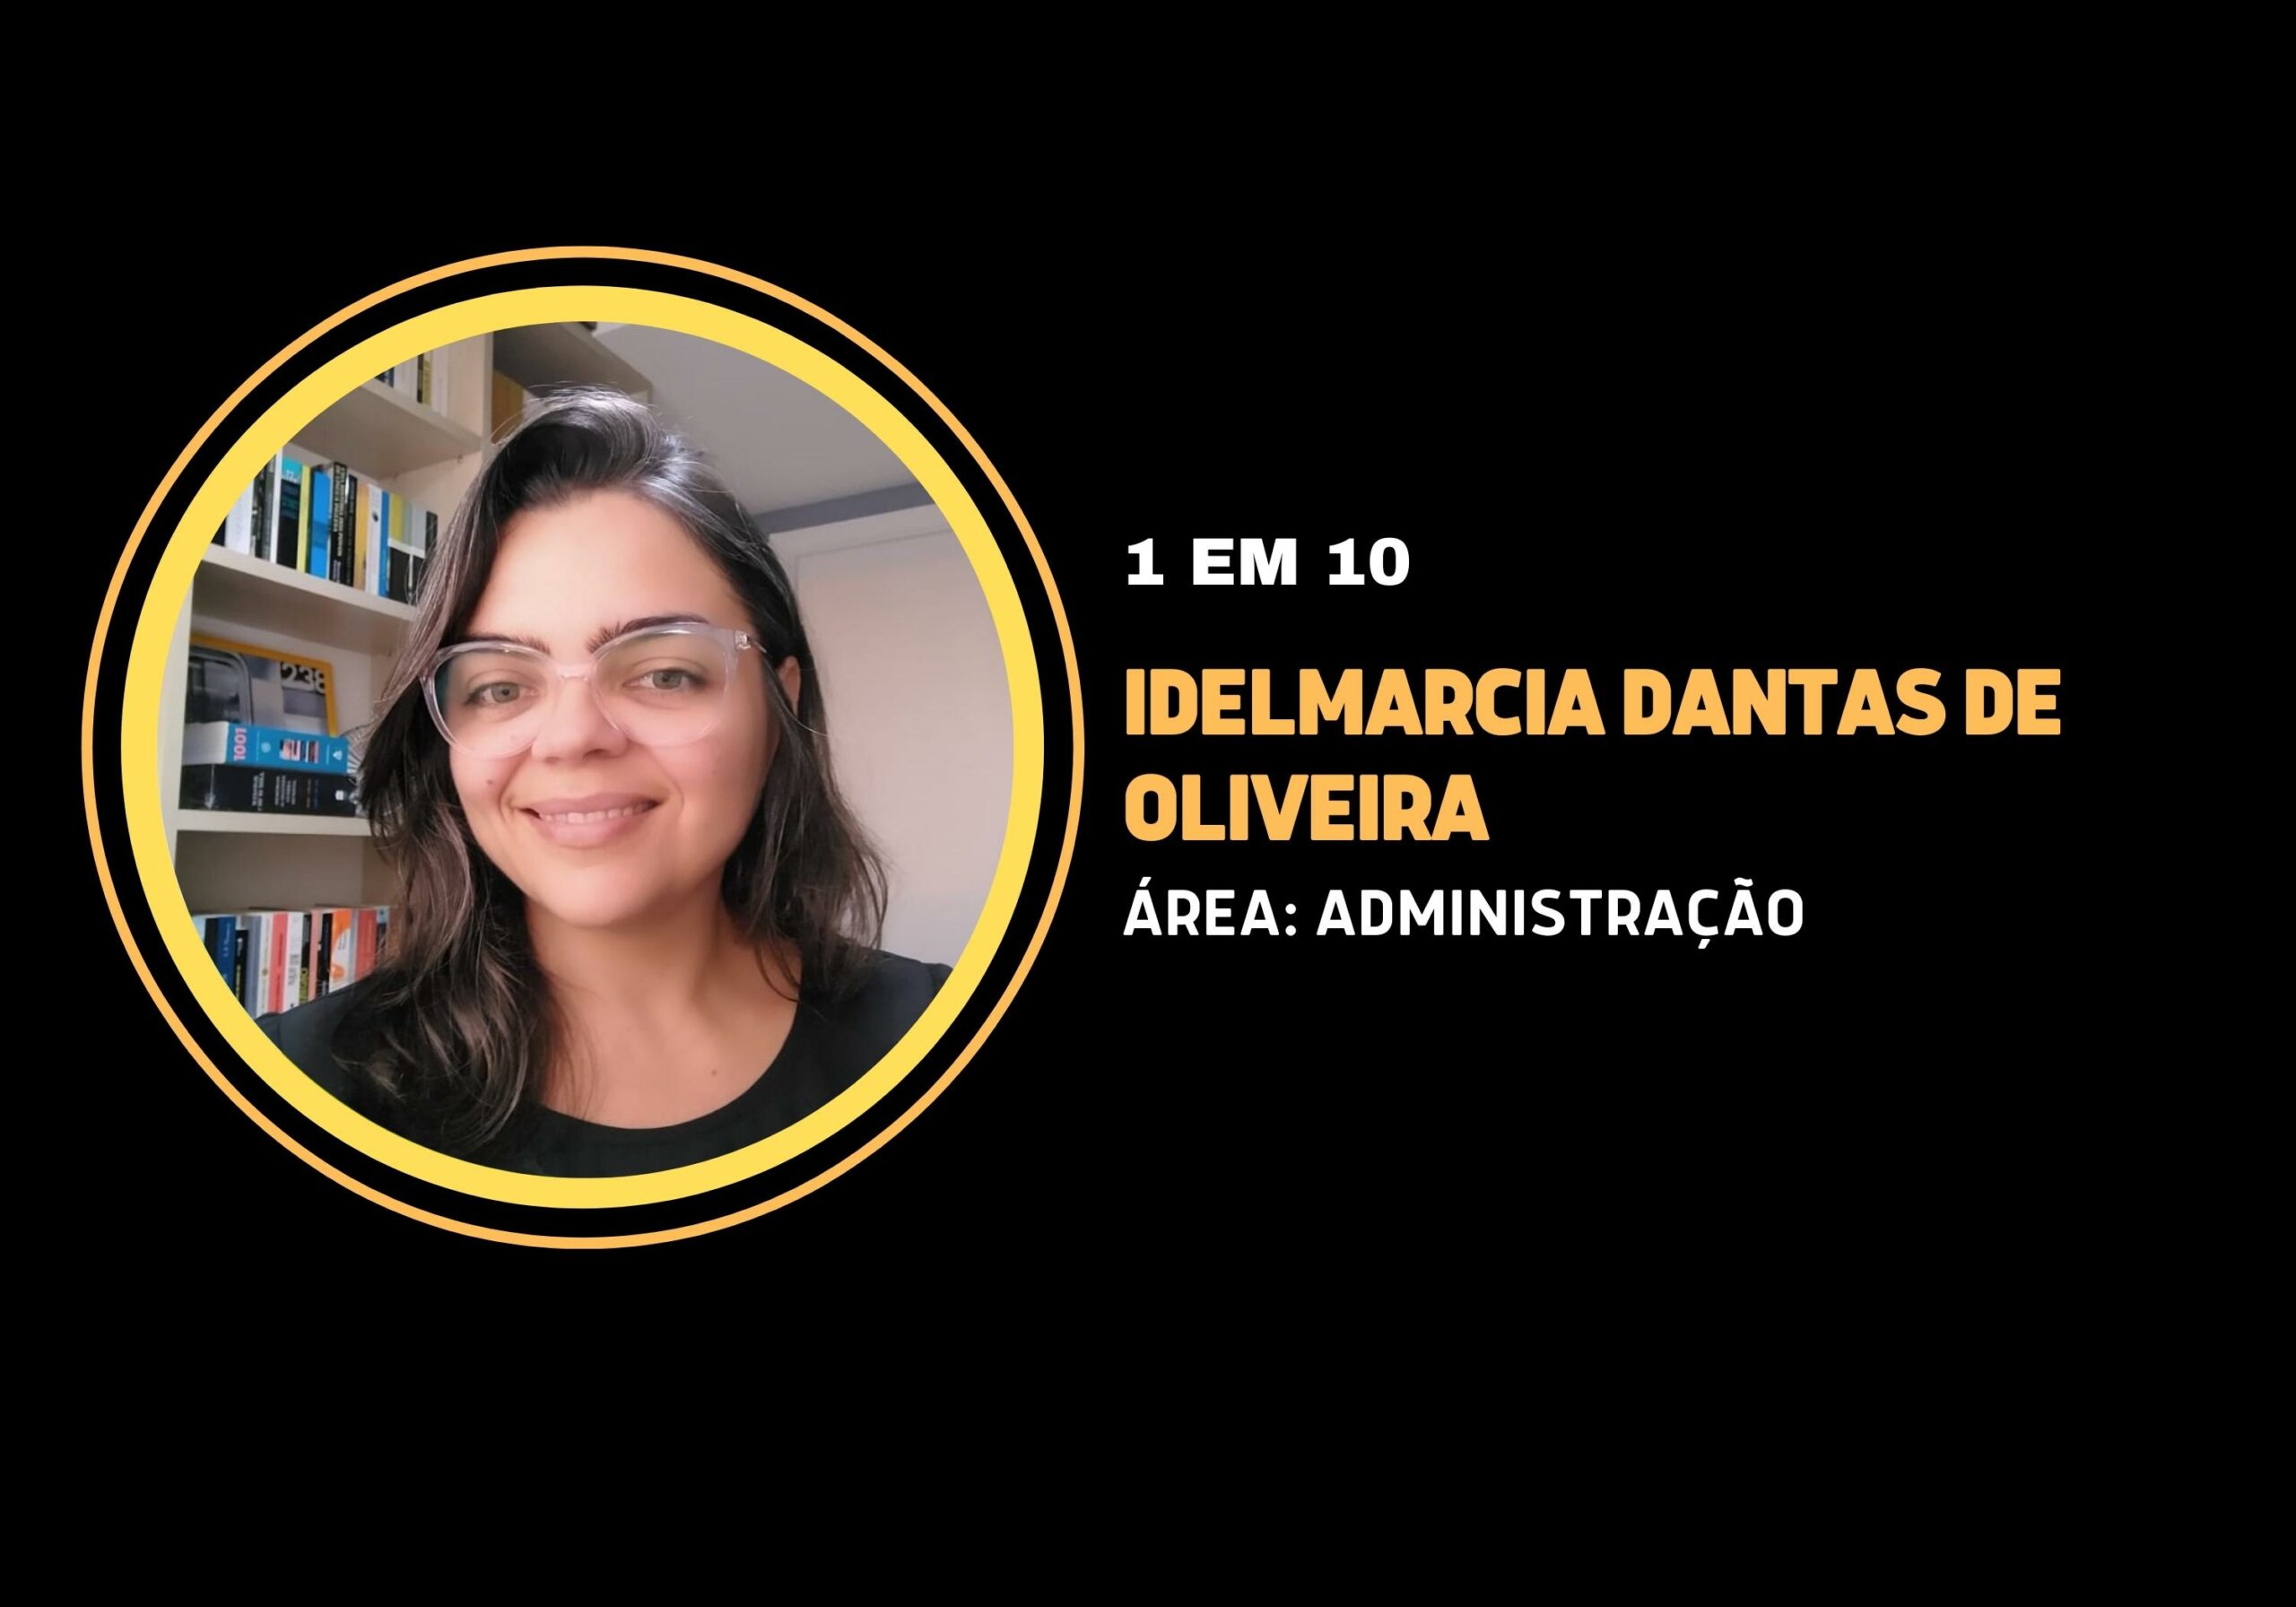 Marcia Dantas de Oliveira | 1 em 10